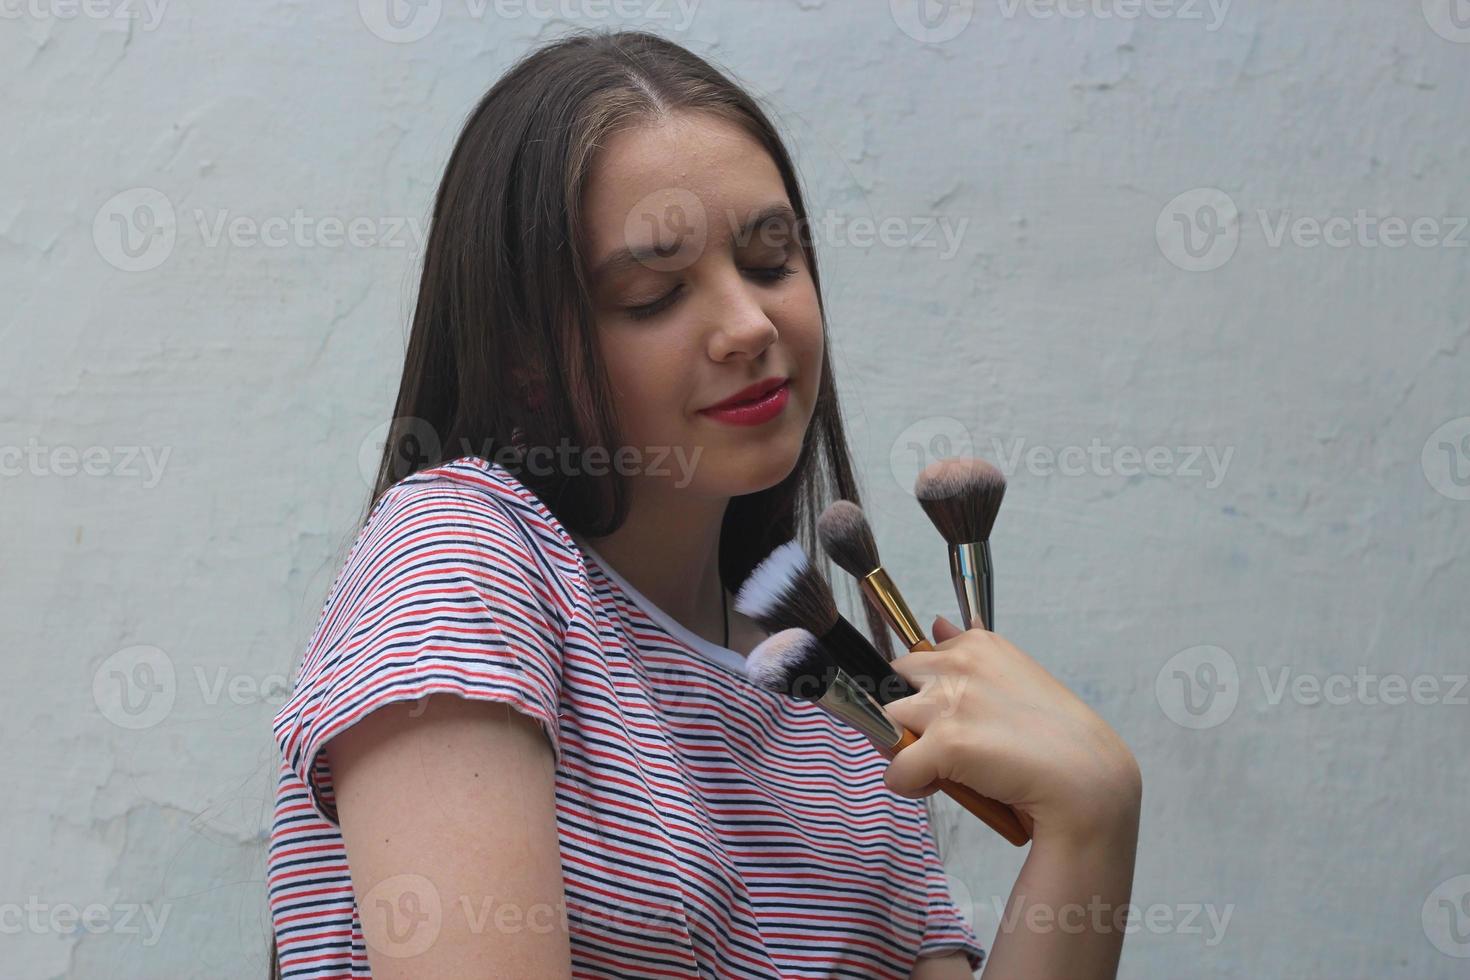 una adolescente se maquilla en casa, una adolescente de cabello oscuro sostiene pinceles de maquillaje foto